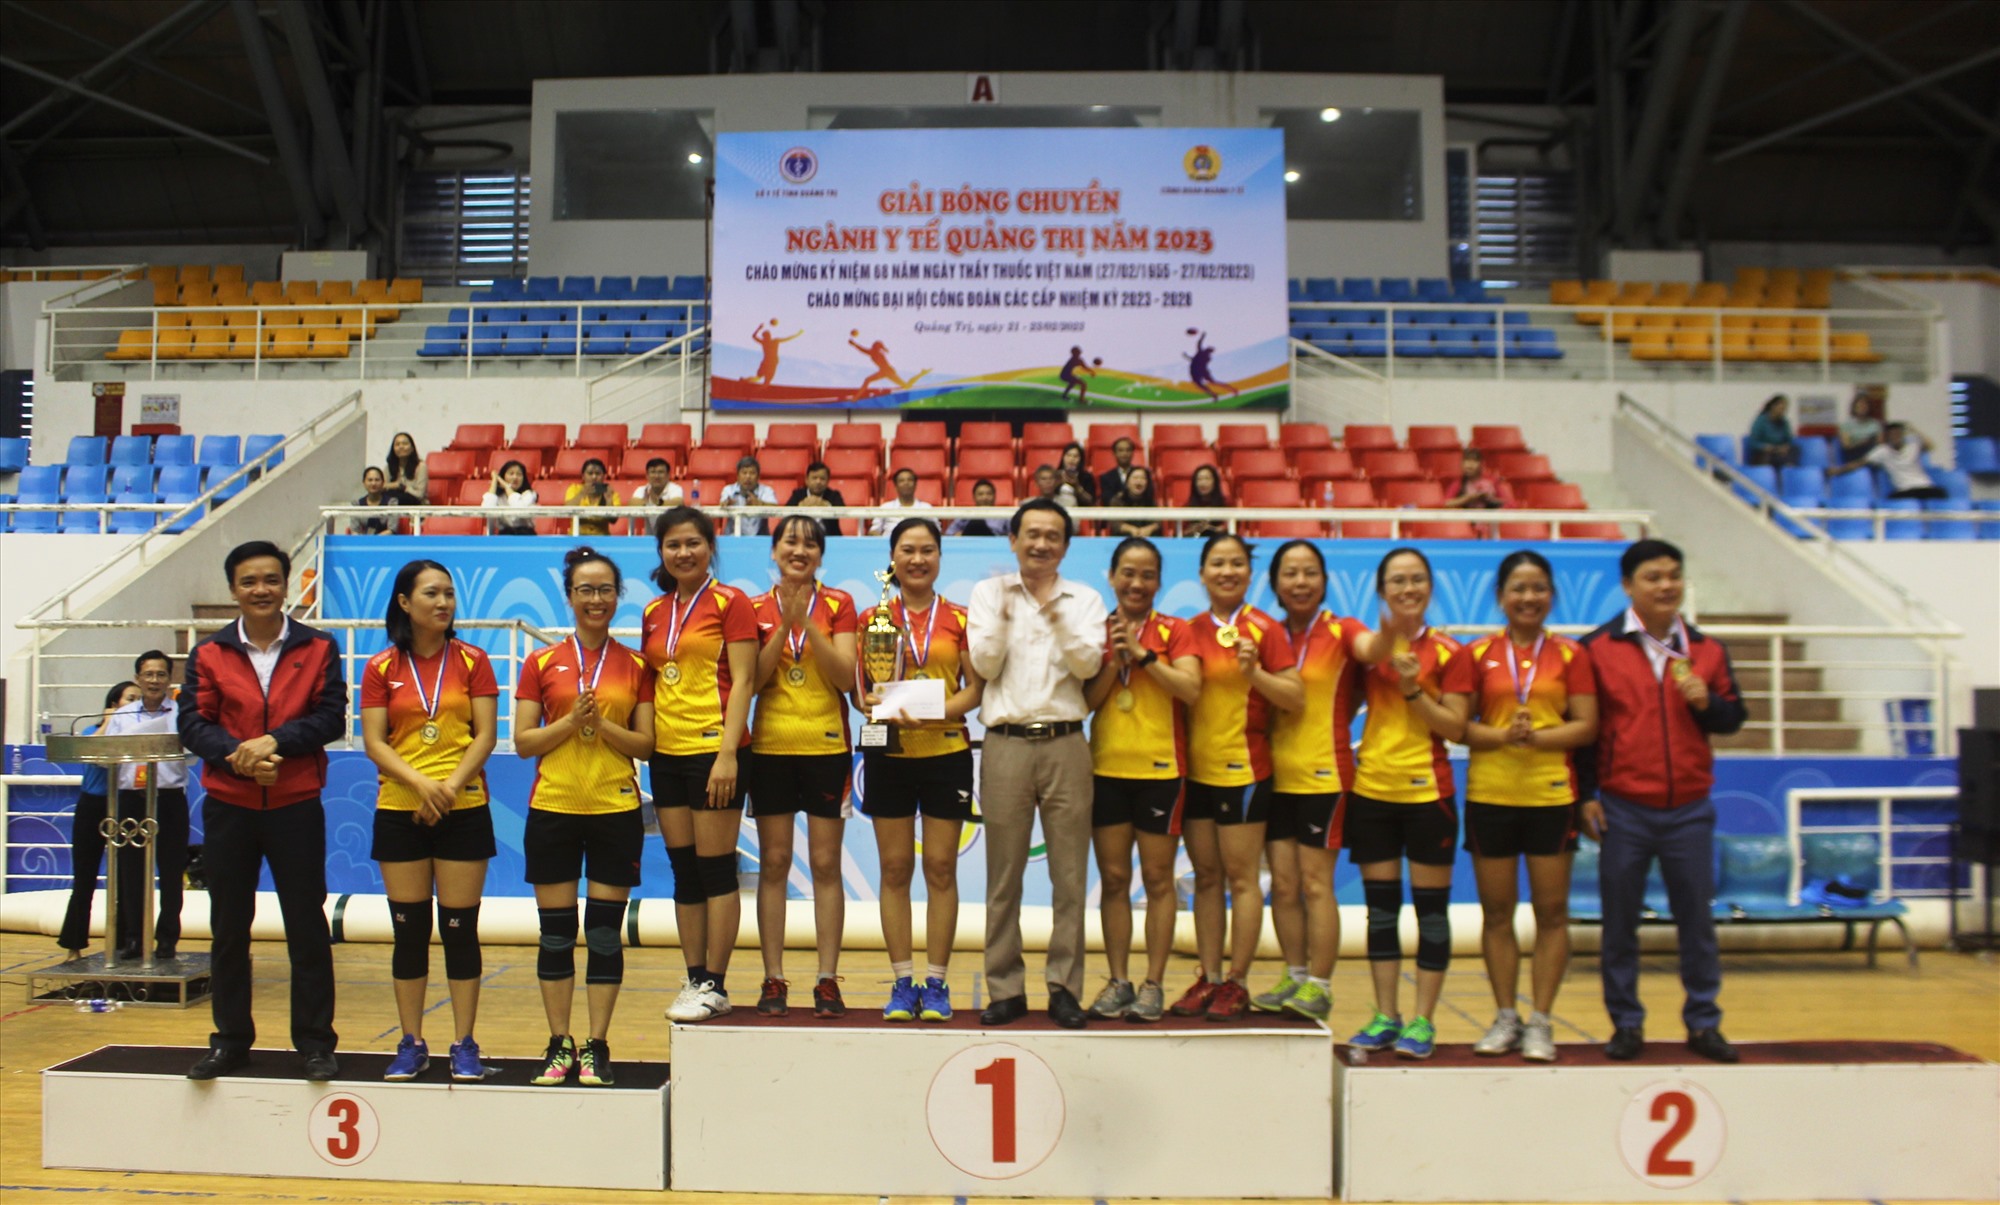 Đội bóng chuyền nam Trung tâm Kiểm soát bệnh tật tỉnh Quảng Trị vô địch Giải Bóng chuyền ngành Y tế tỉnh Quảng Trị năm 2023. Ảnh: Bội Nhiên